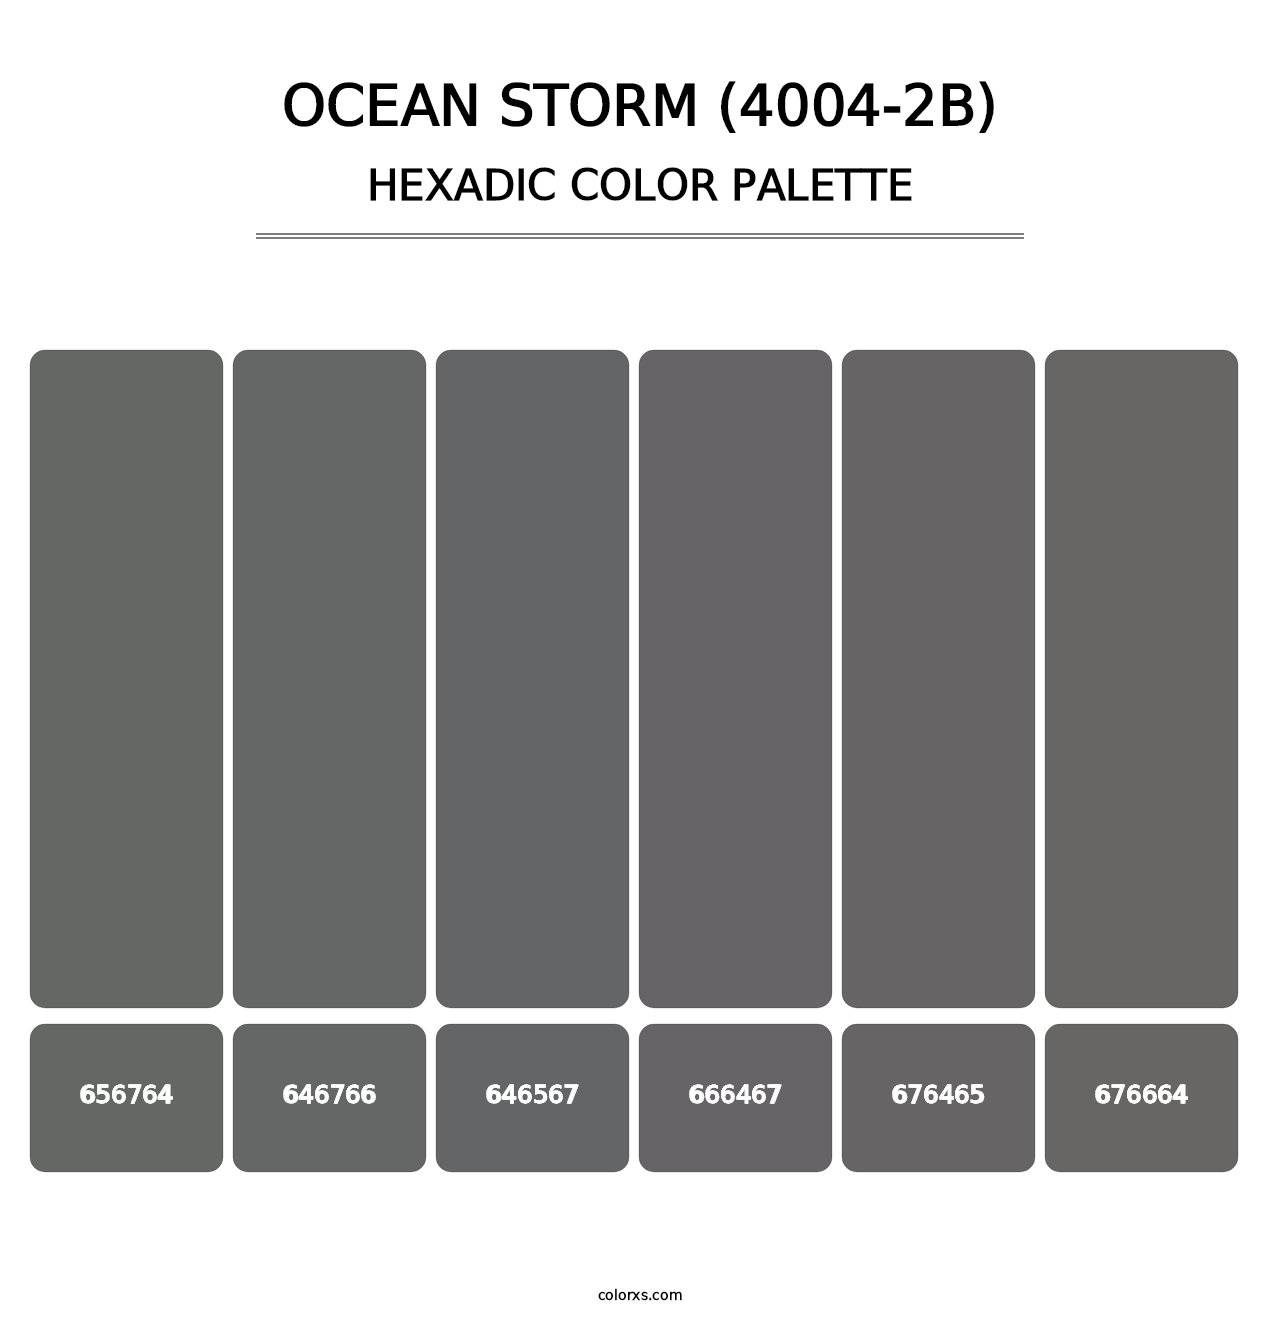 Ocean Storm (4004-2B) - Hexadic Color Palette